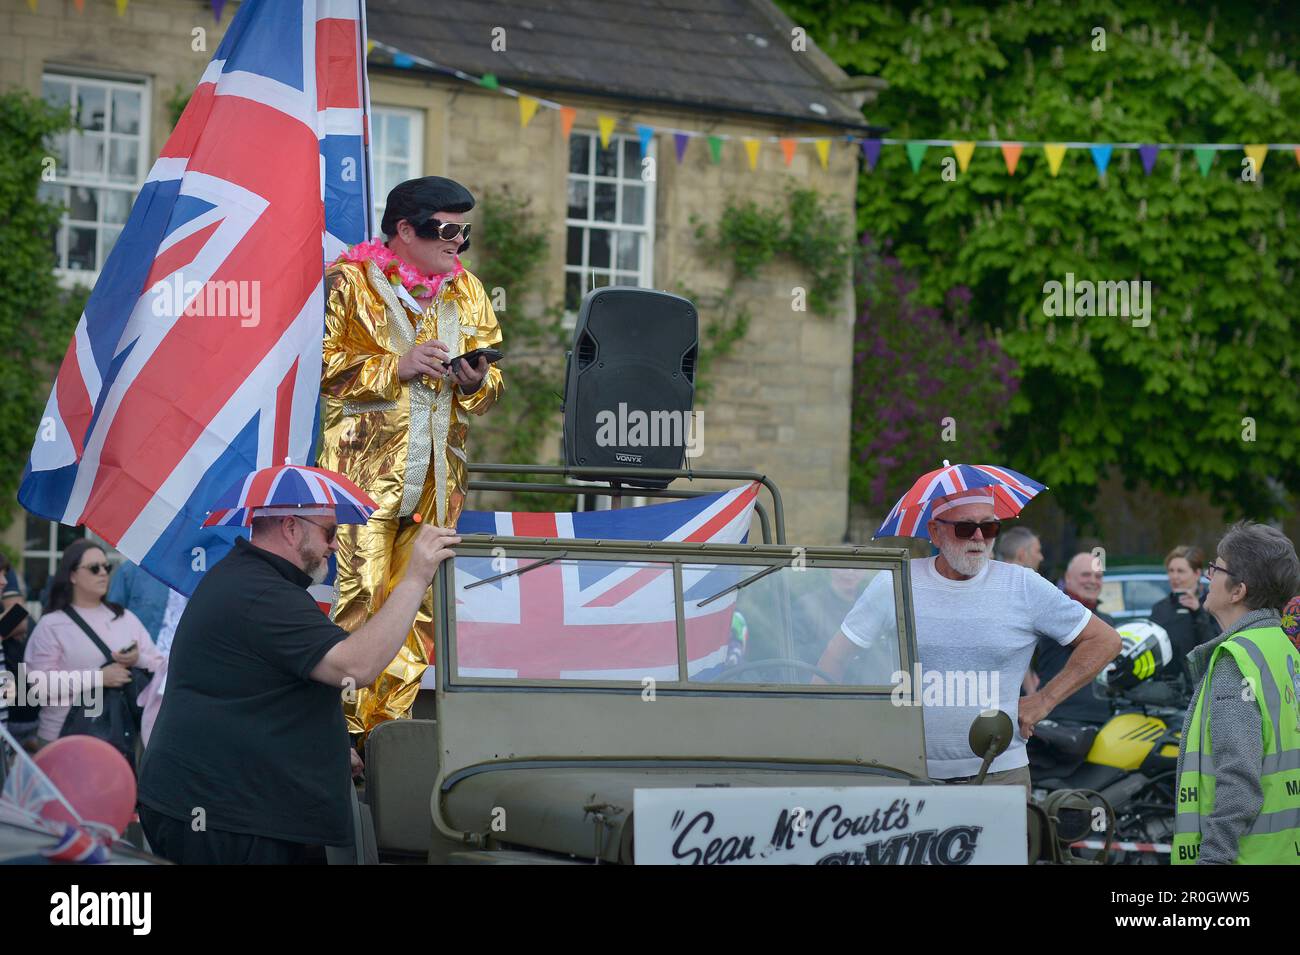 King Charles III Coronation Celebrations Masham North Yorkshire England Stock Photo